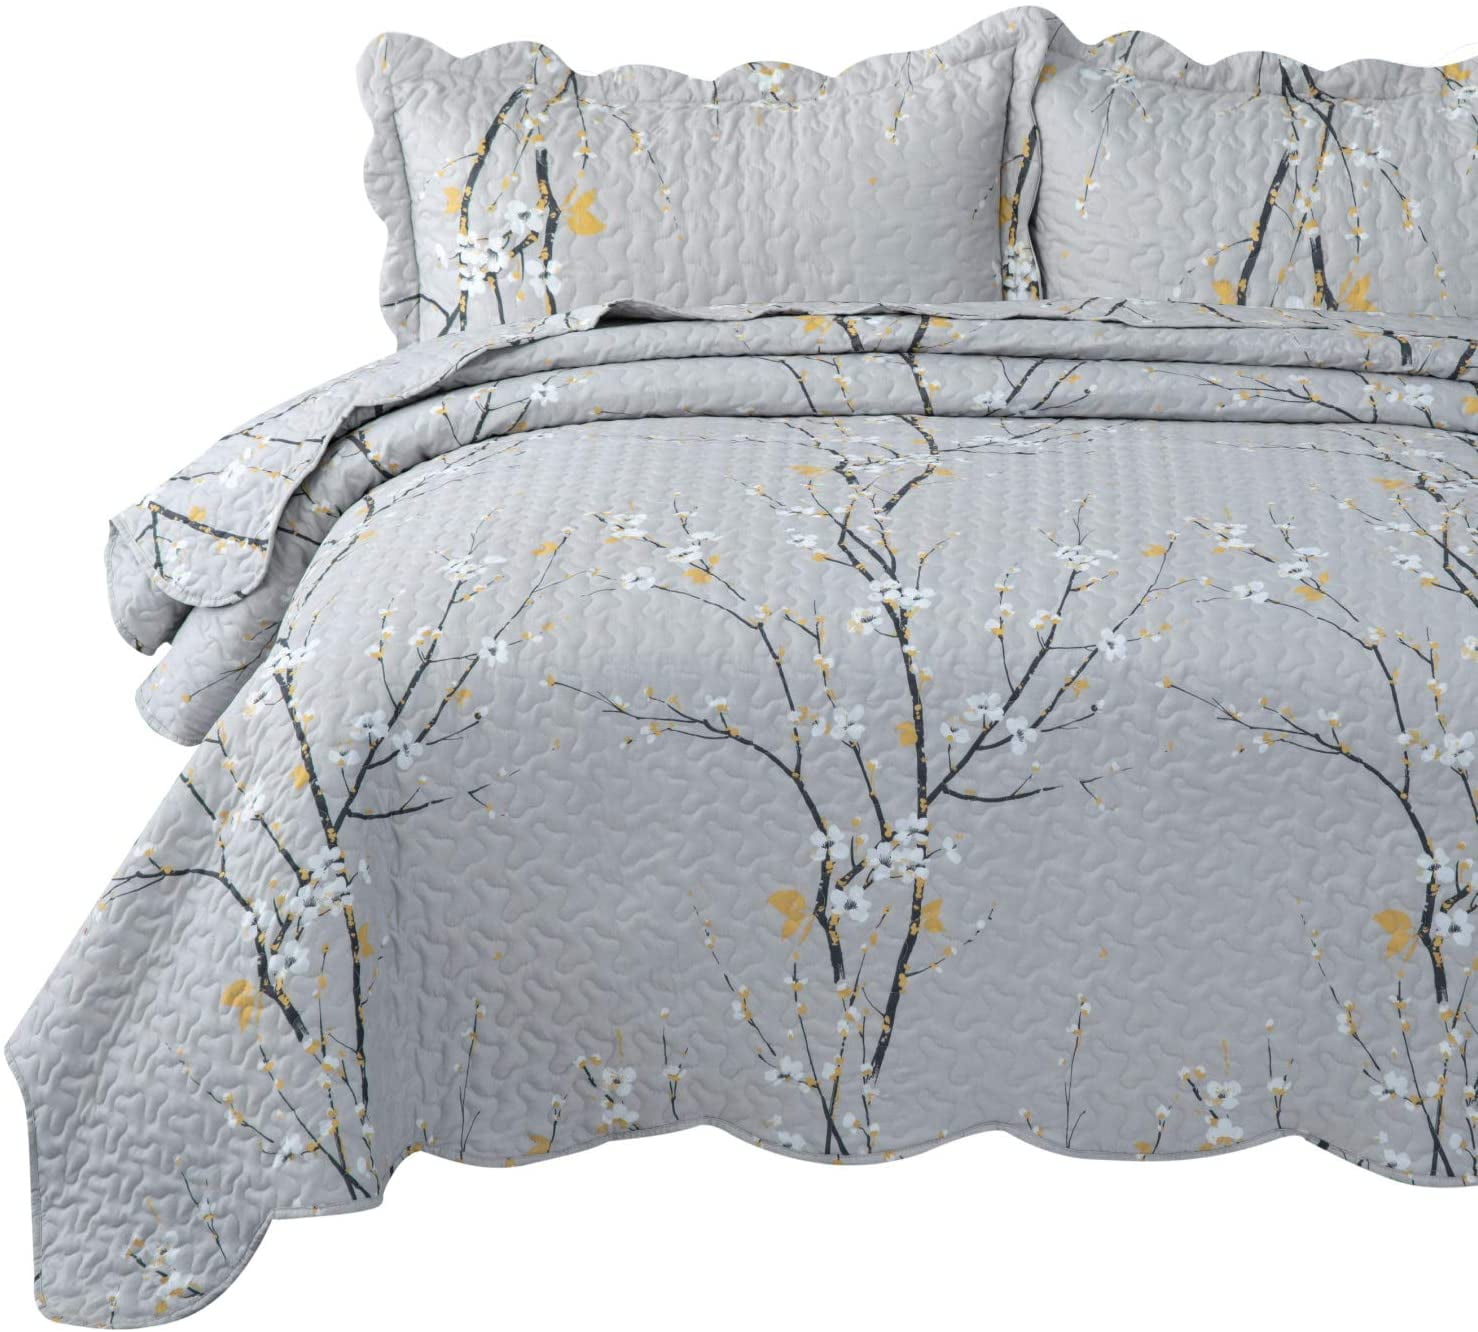 Details about  / Floral Black Comforter Rug Blanket Quilt King Size Bedding Set Pillowshams US